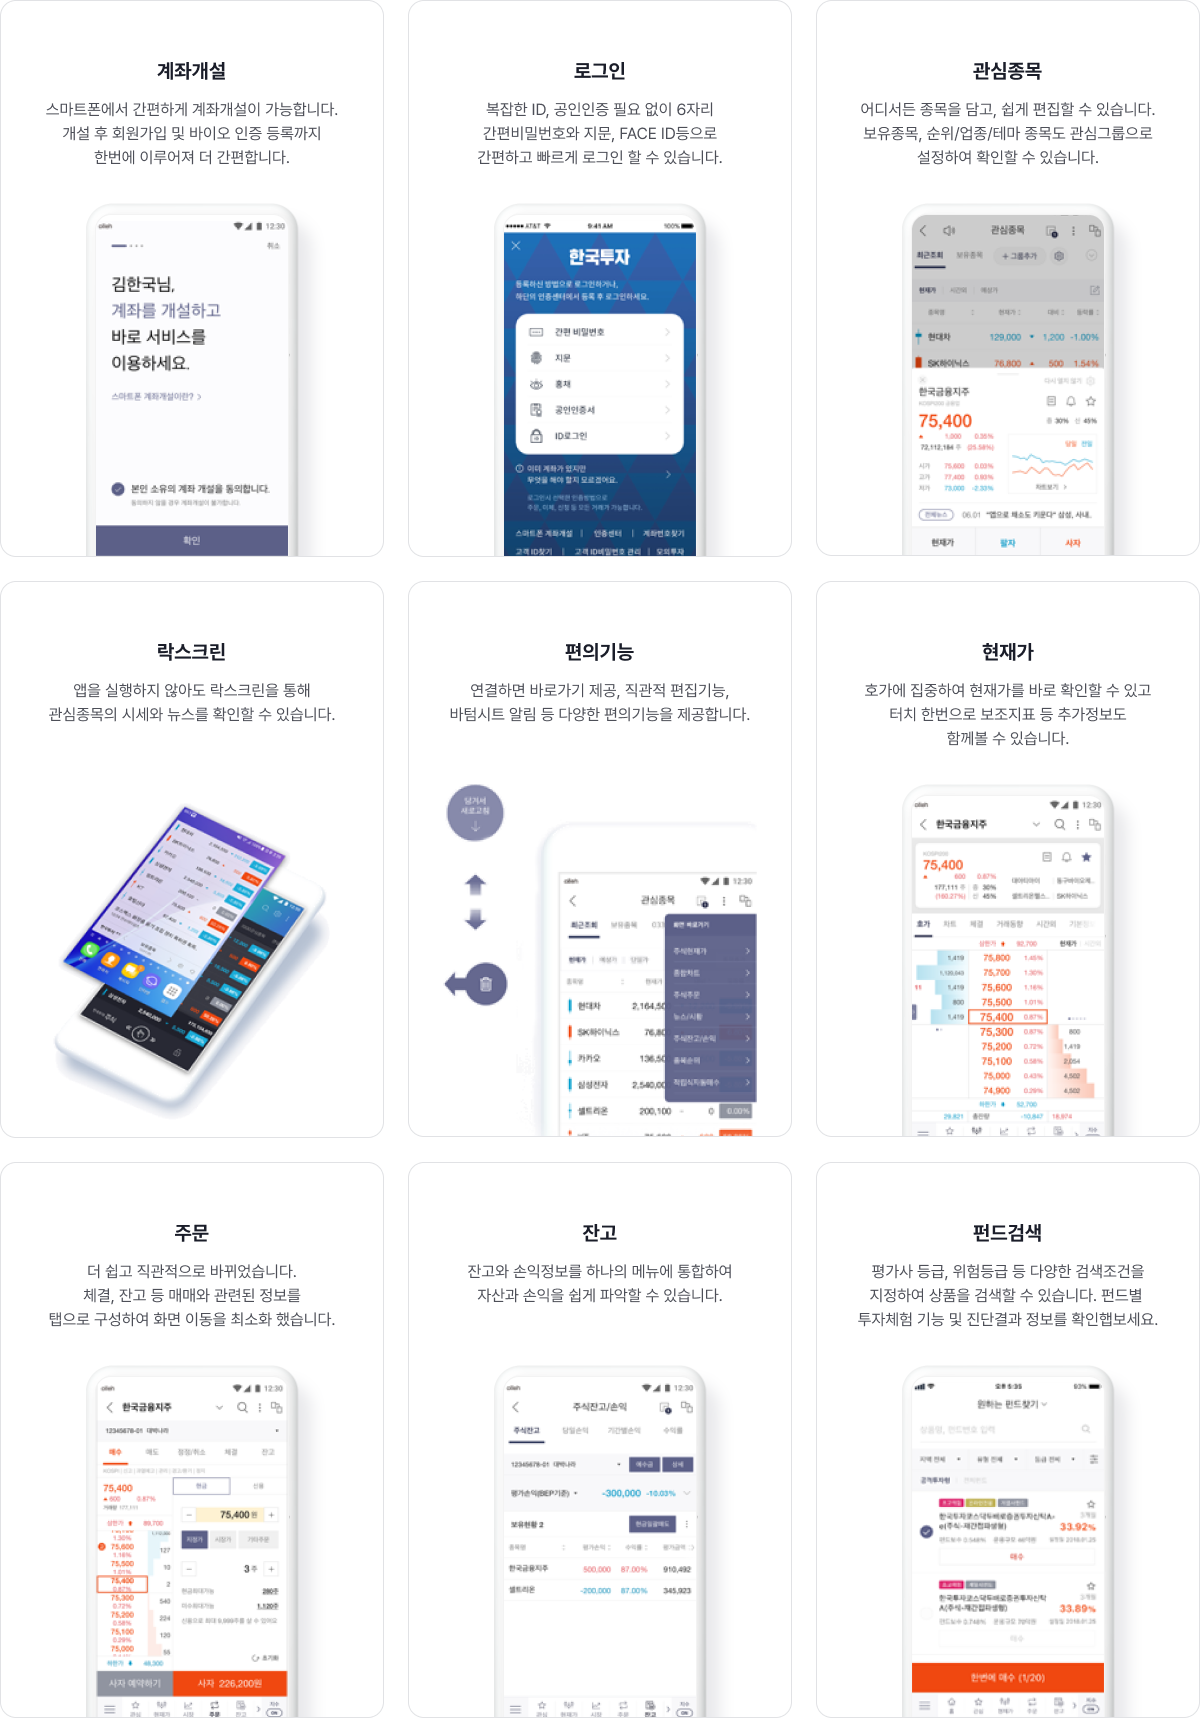 한국투자 앱 주요 서비스/특징 안내